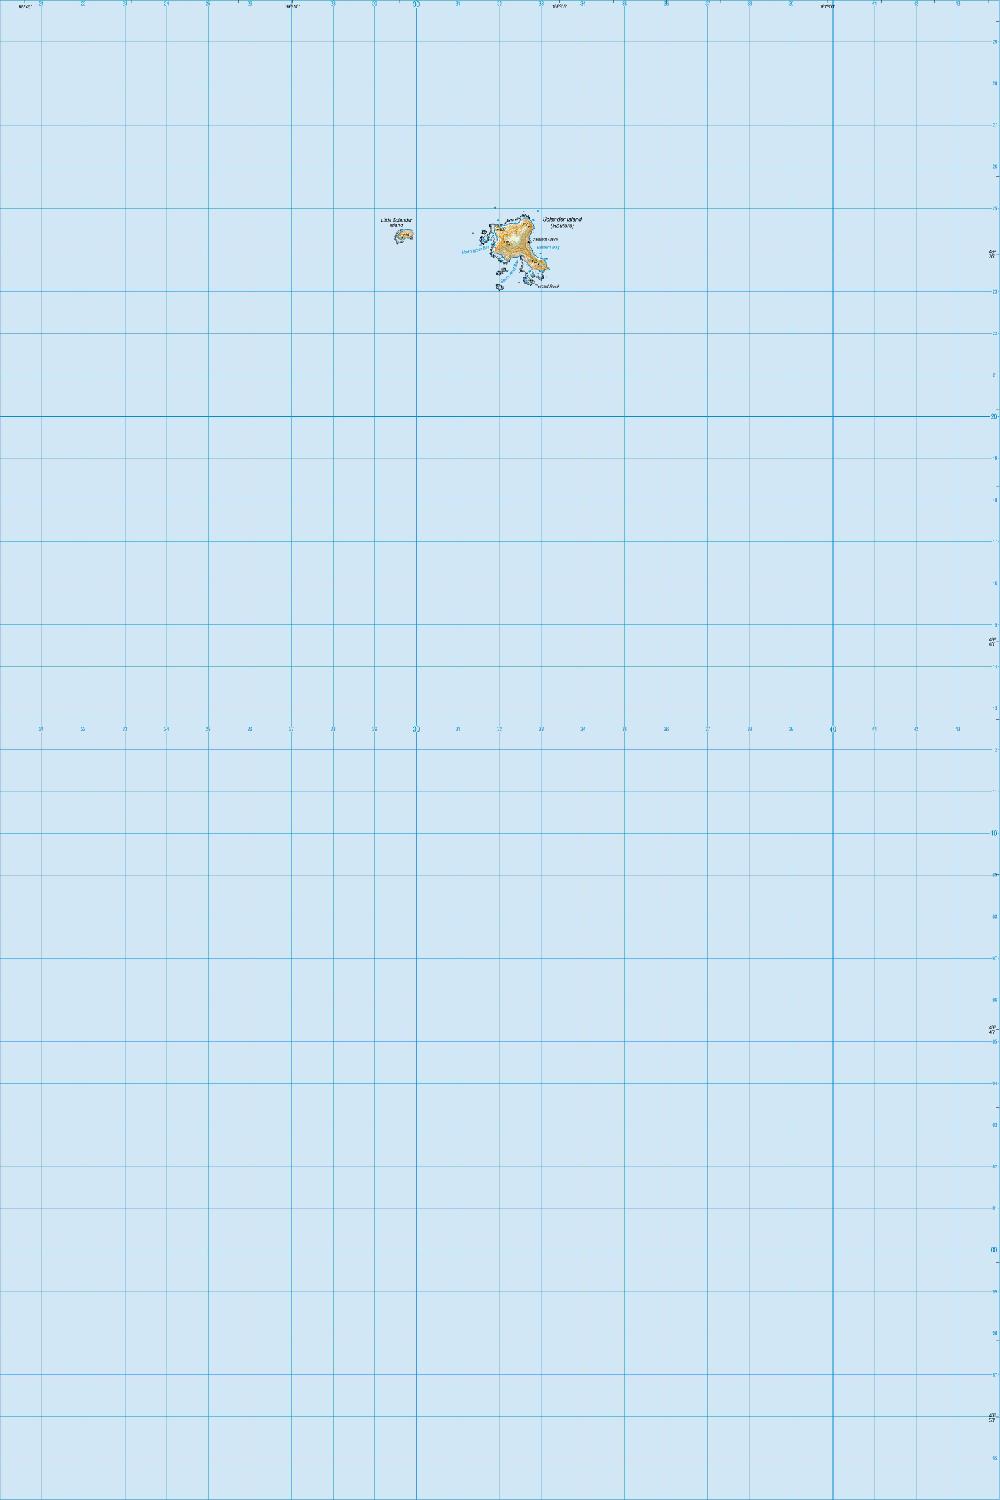 Topo map of Solander Island (Hautere)